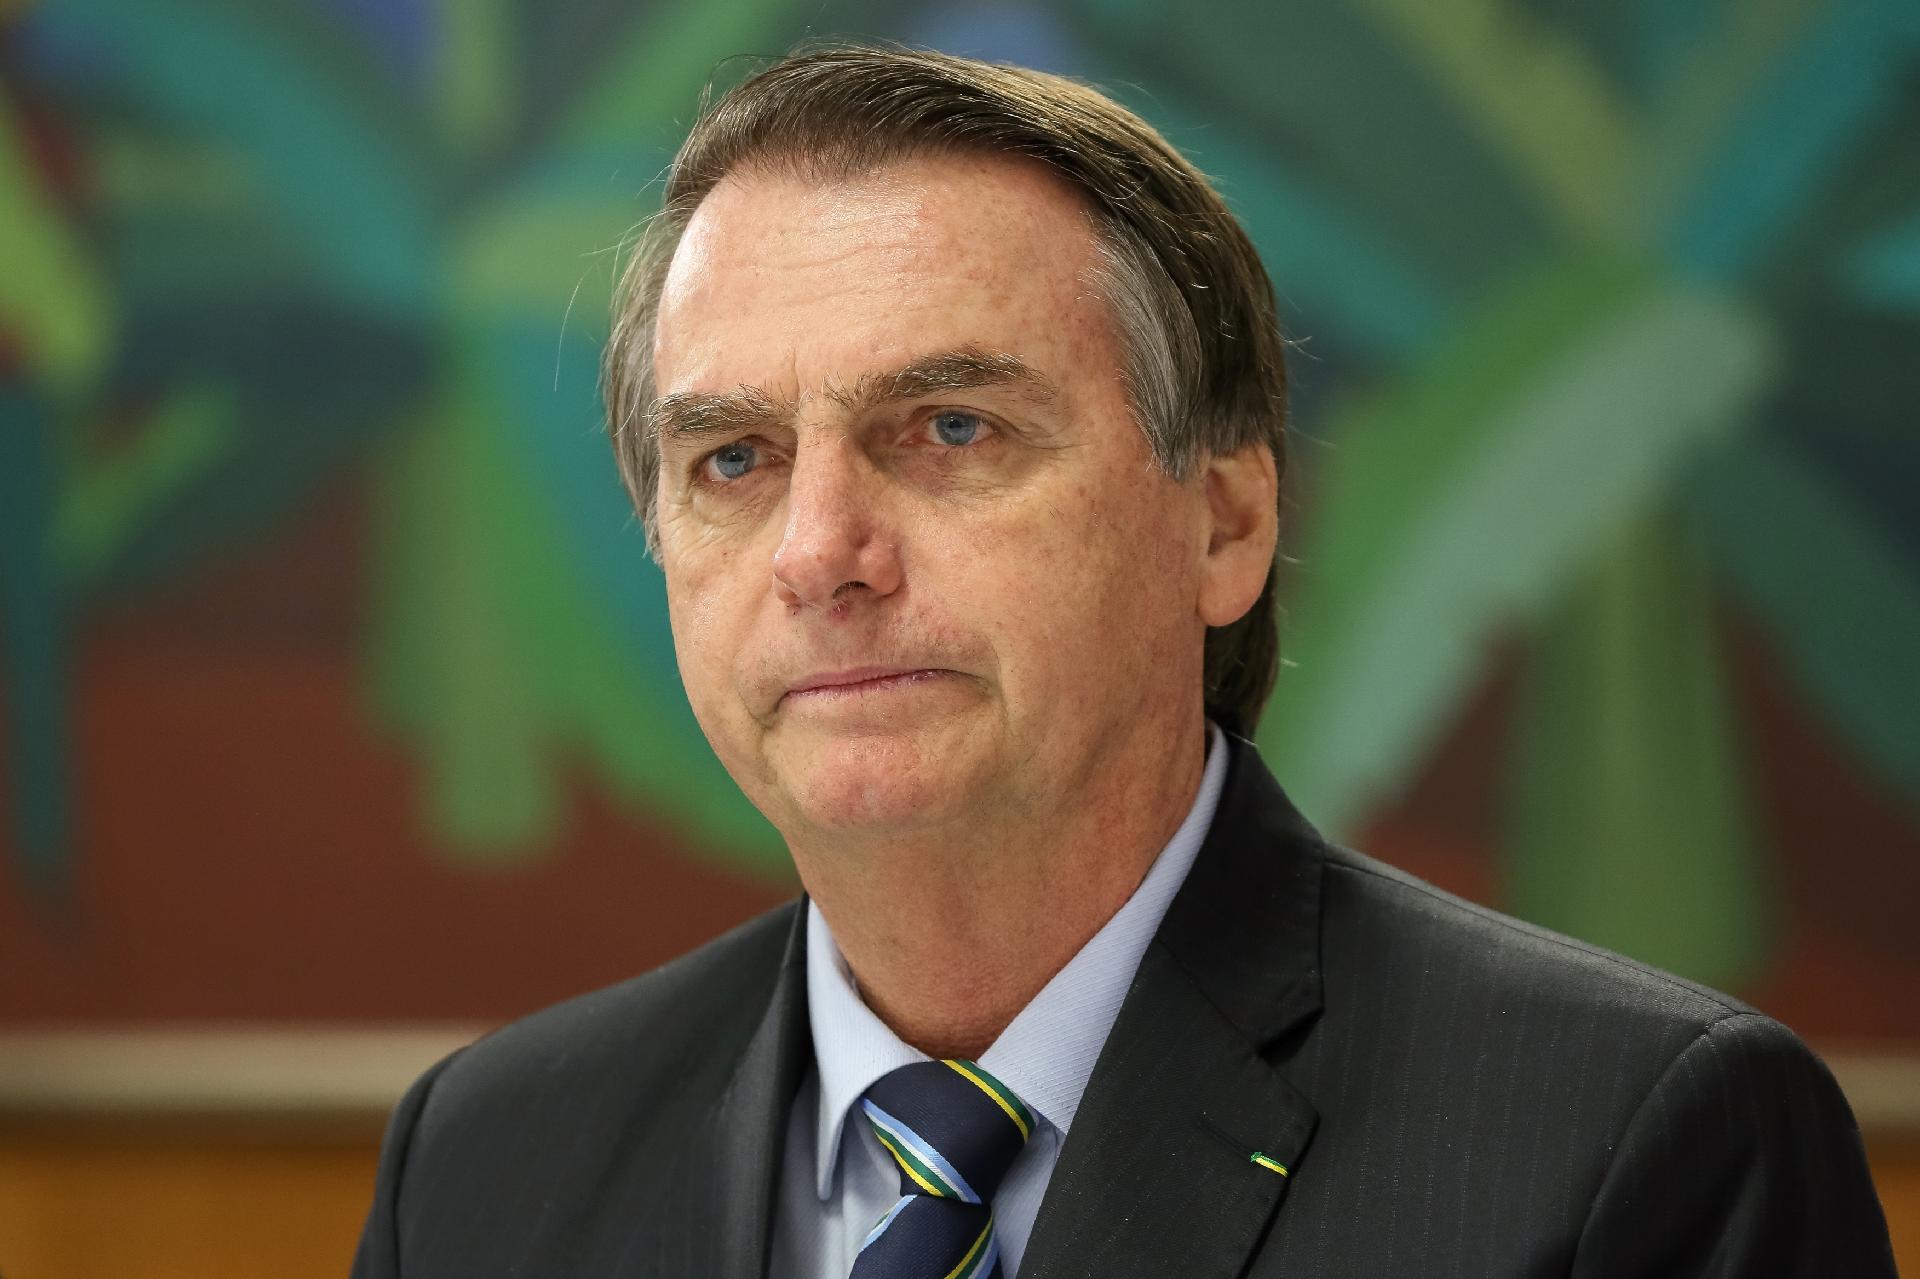 Pesquisa aponta aumento na rejeição ao governo Bolsonaro. E você, como avalia a gestão?